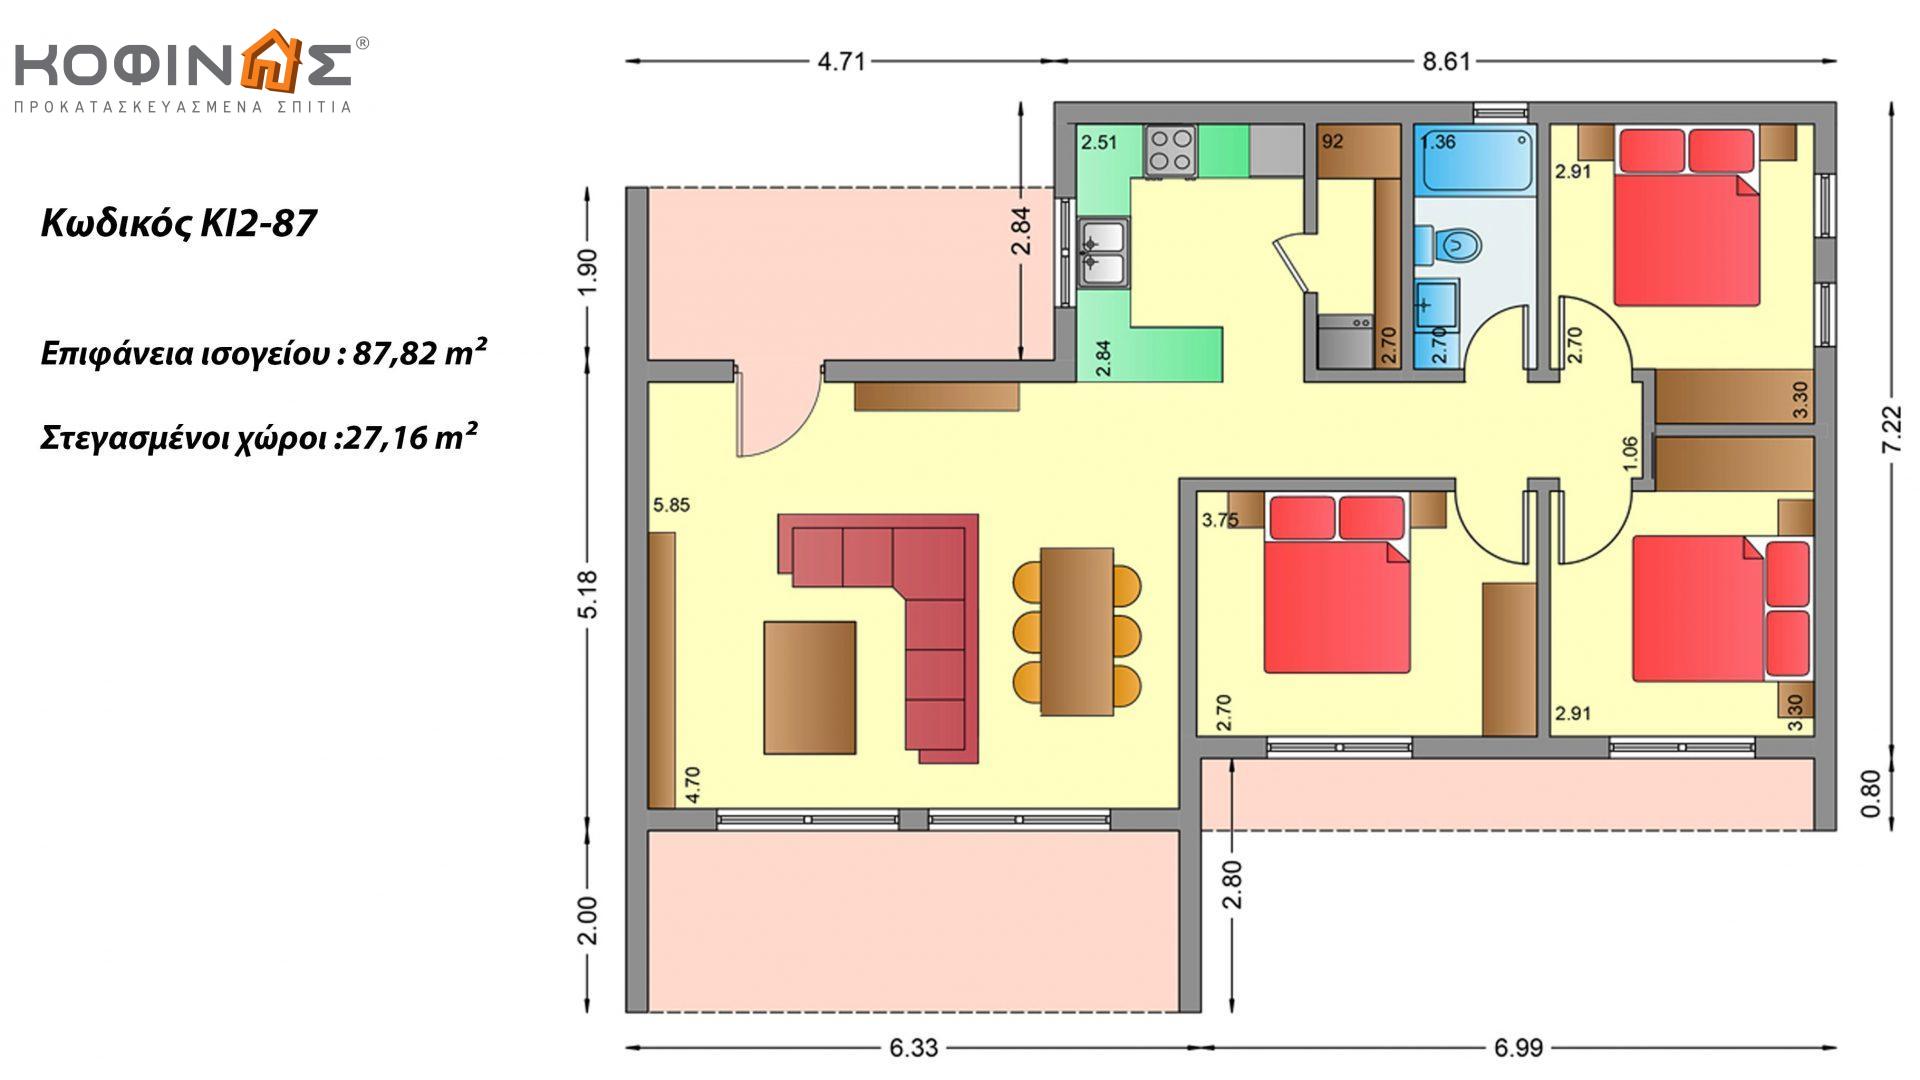 Ισόγεια Κατοικία ΚI2-87 συνολικής επιφάνειας 87,82 τ.μ., στεγασμένοι χώροι 27,16 τ.μ